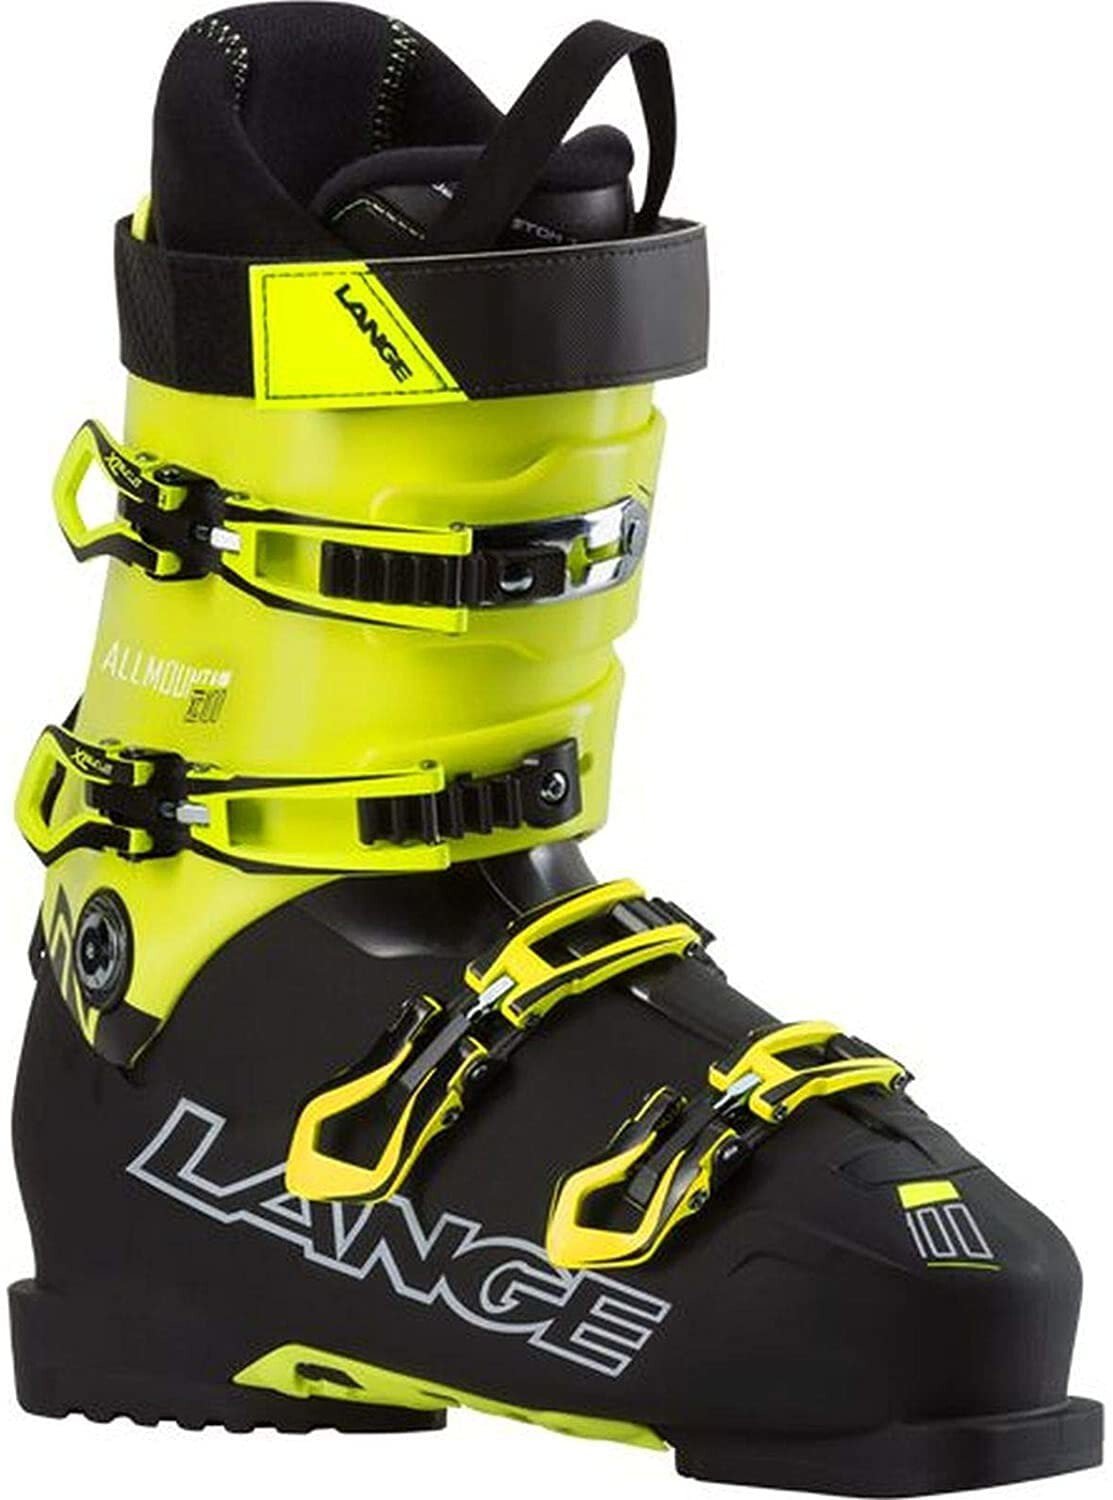 Ботинки для горных лыж Lange XC 100 Ski Boots